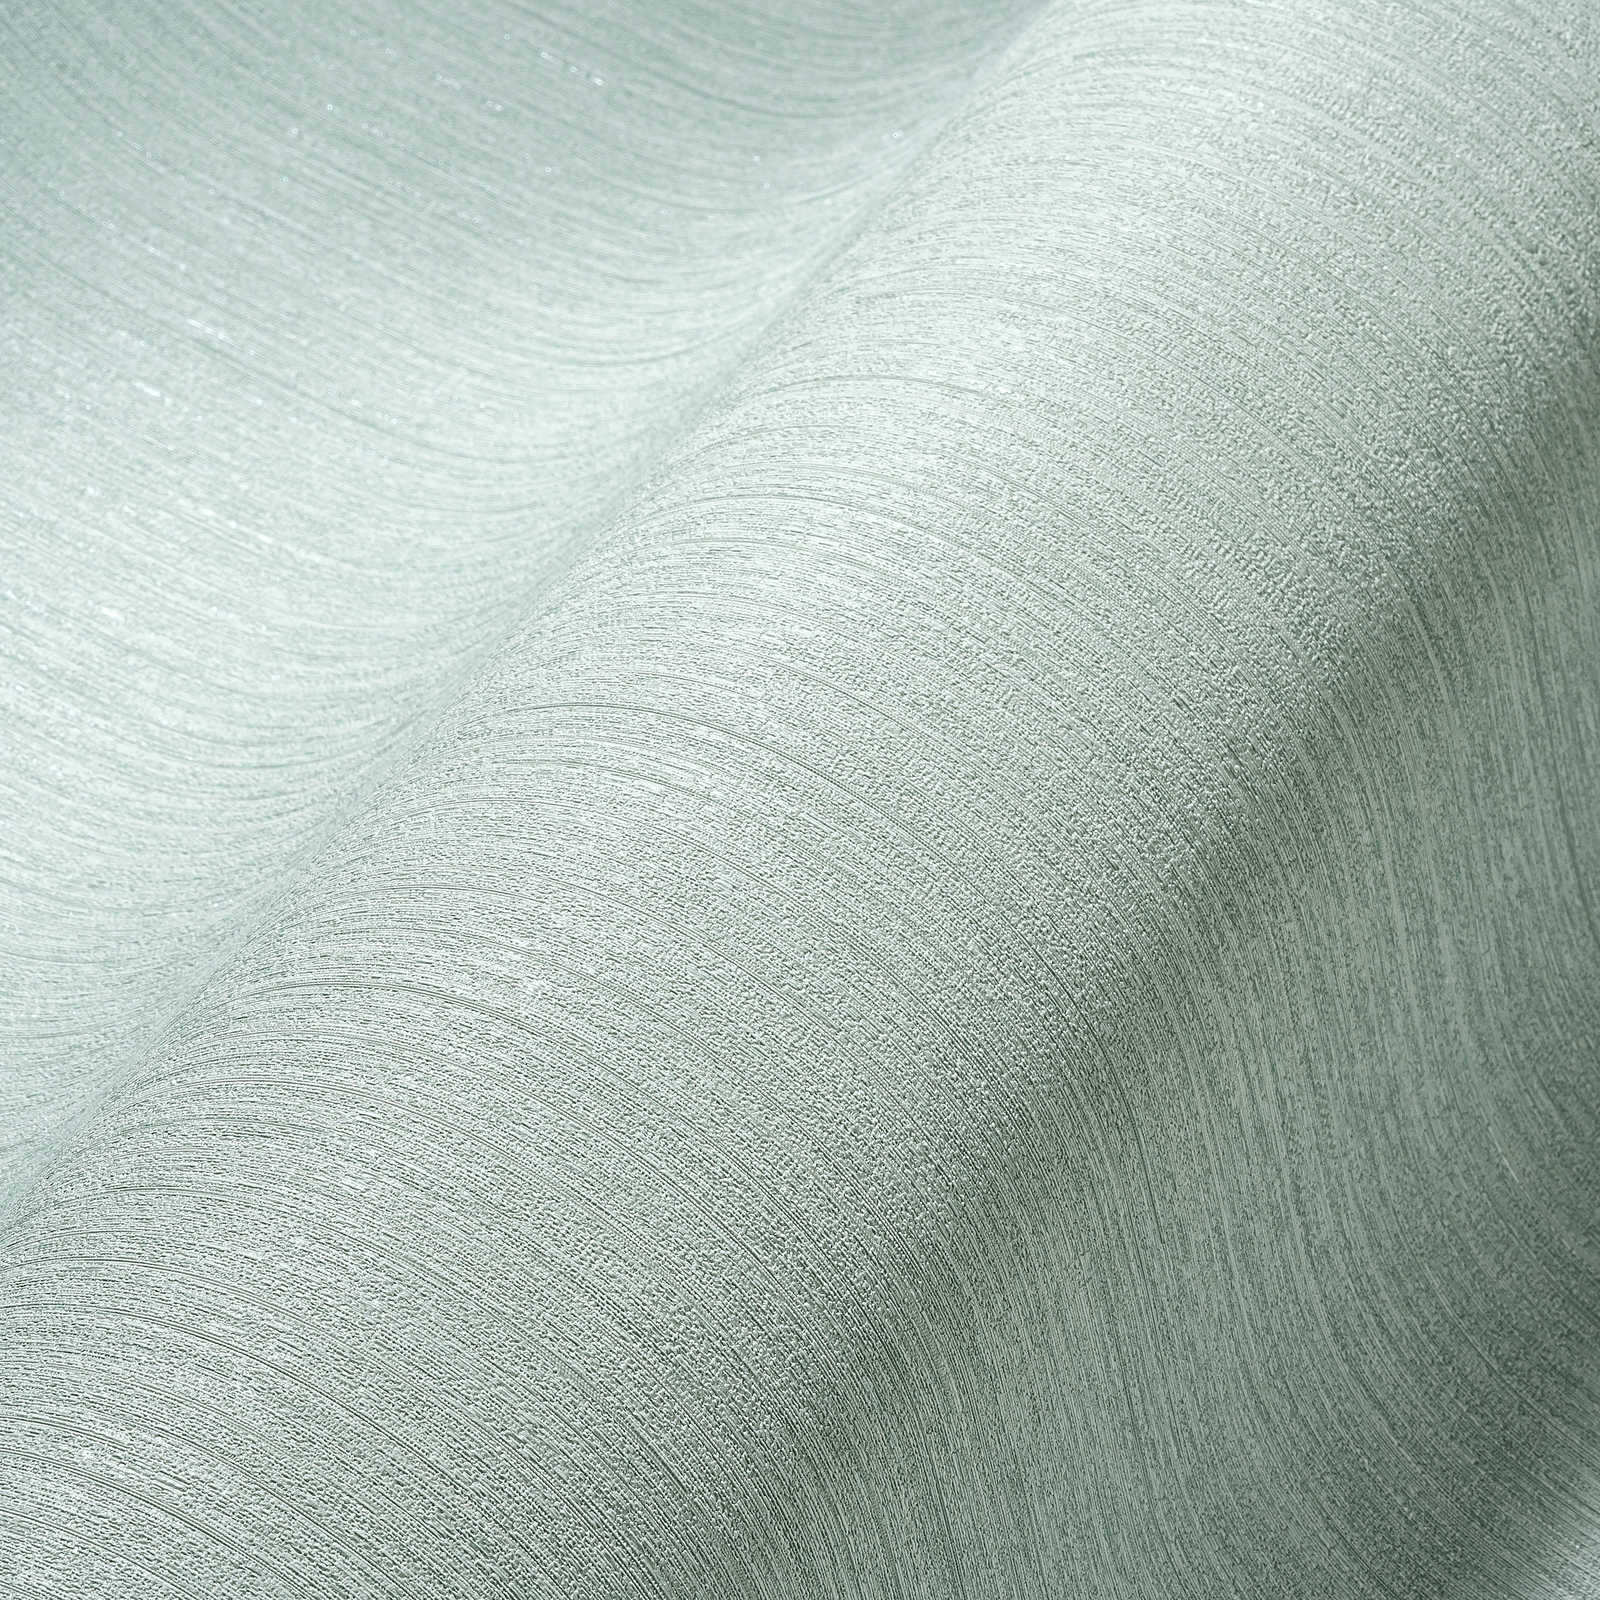             Papier peint vert menthe uni, soie mate avec motifs structurés
        